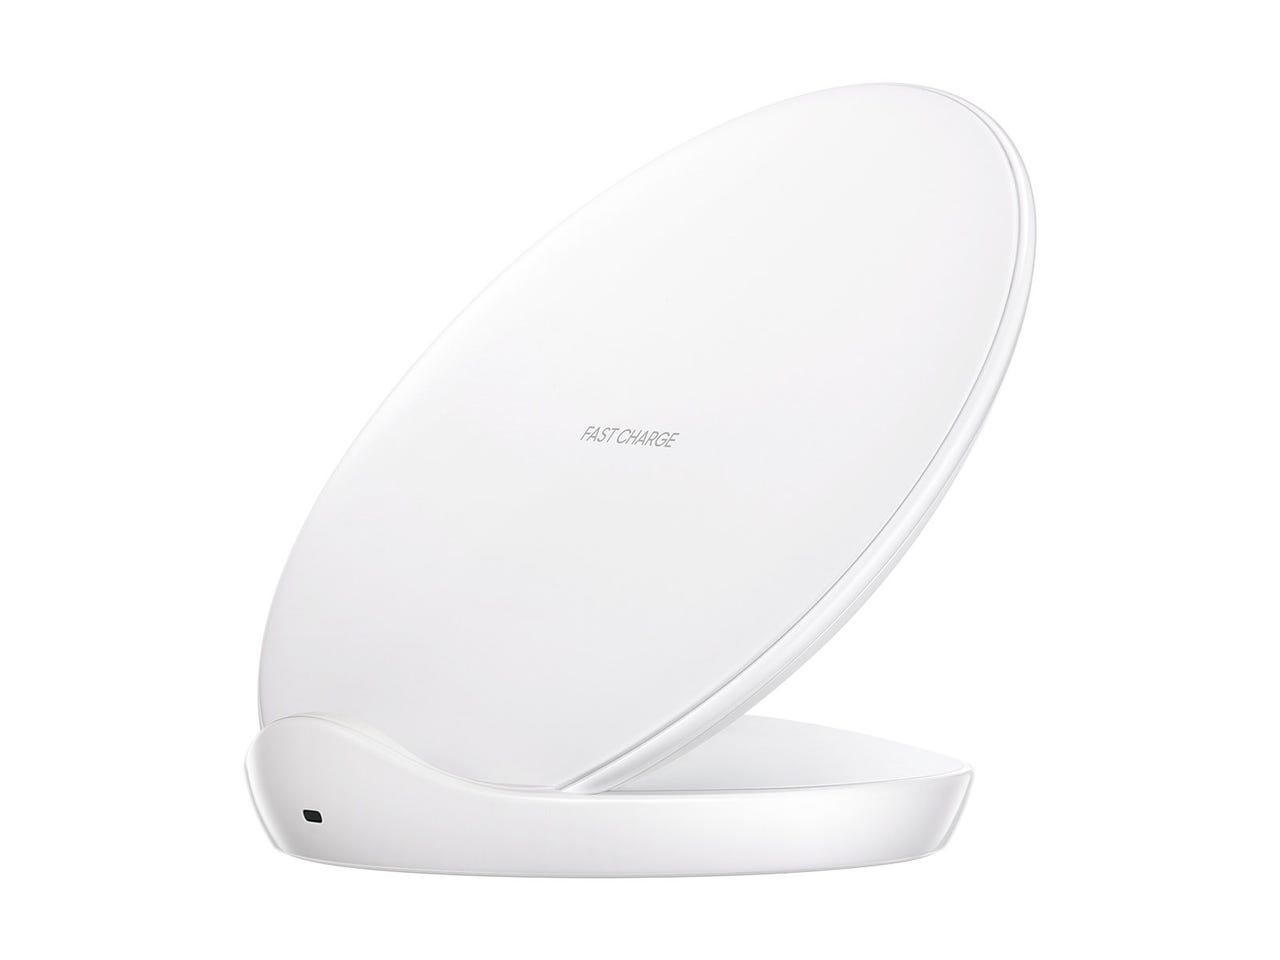 0209-gi-wireless-charger-ep-n5100b-003-dynamic-white.jpg